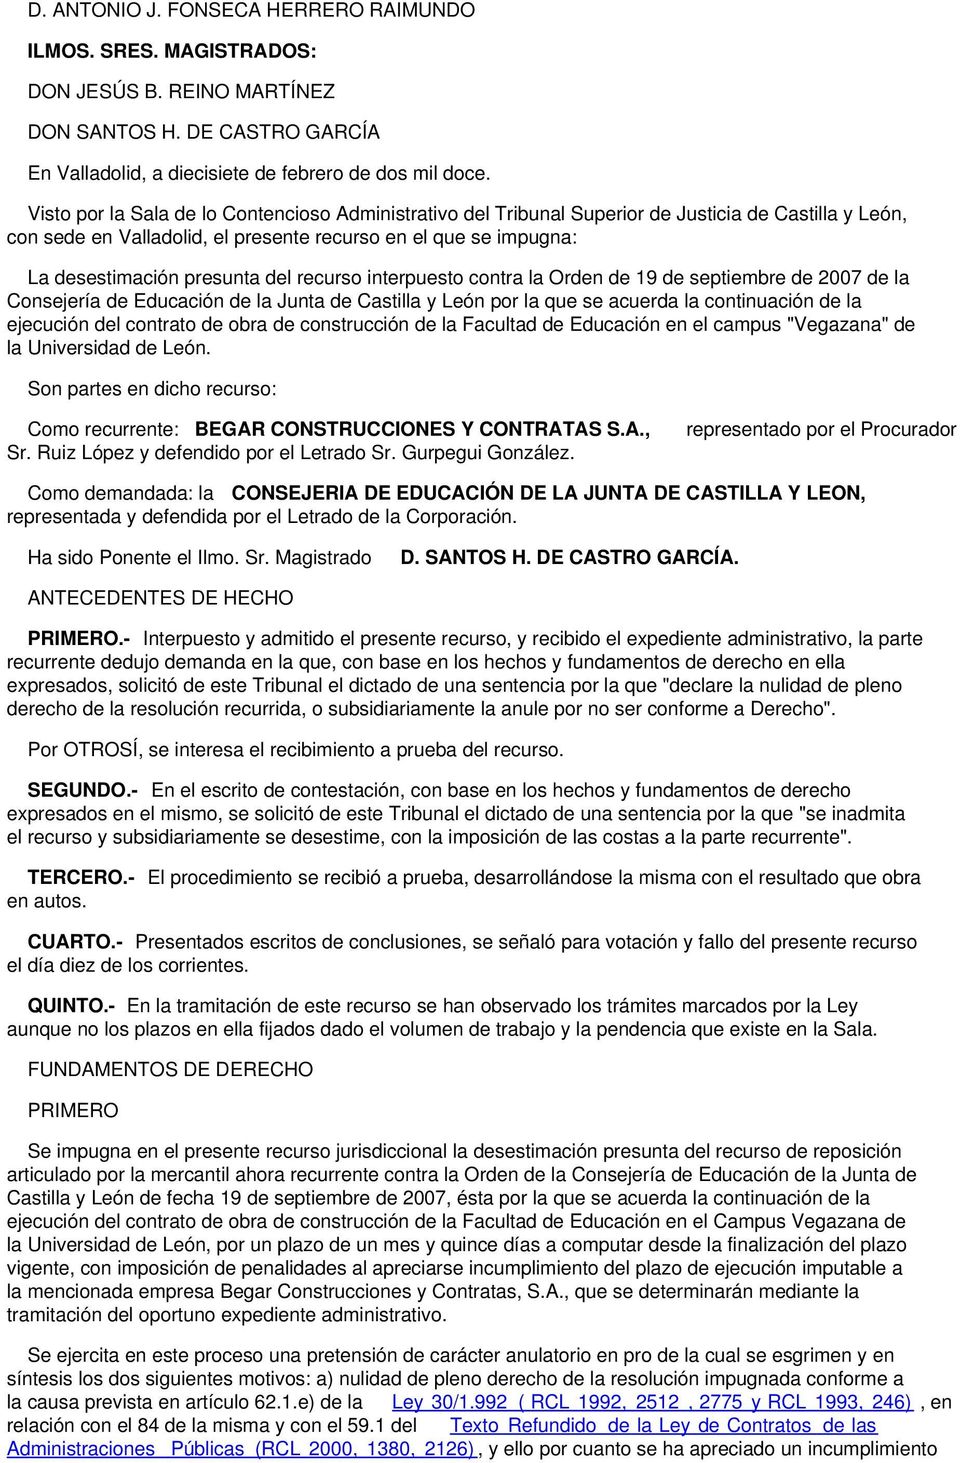 del recurso interpuesto contra la Orden de 19 de septiembre de 2007 de la Consejería de Educación de la Junta de Castilla y León por la que se acuerda la continuación de la ejecución del contrato de